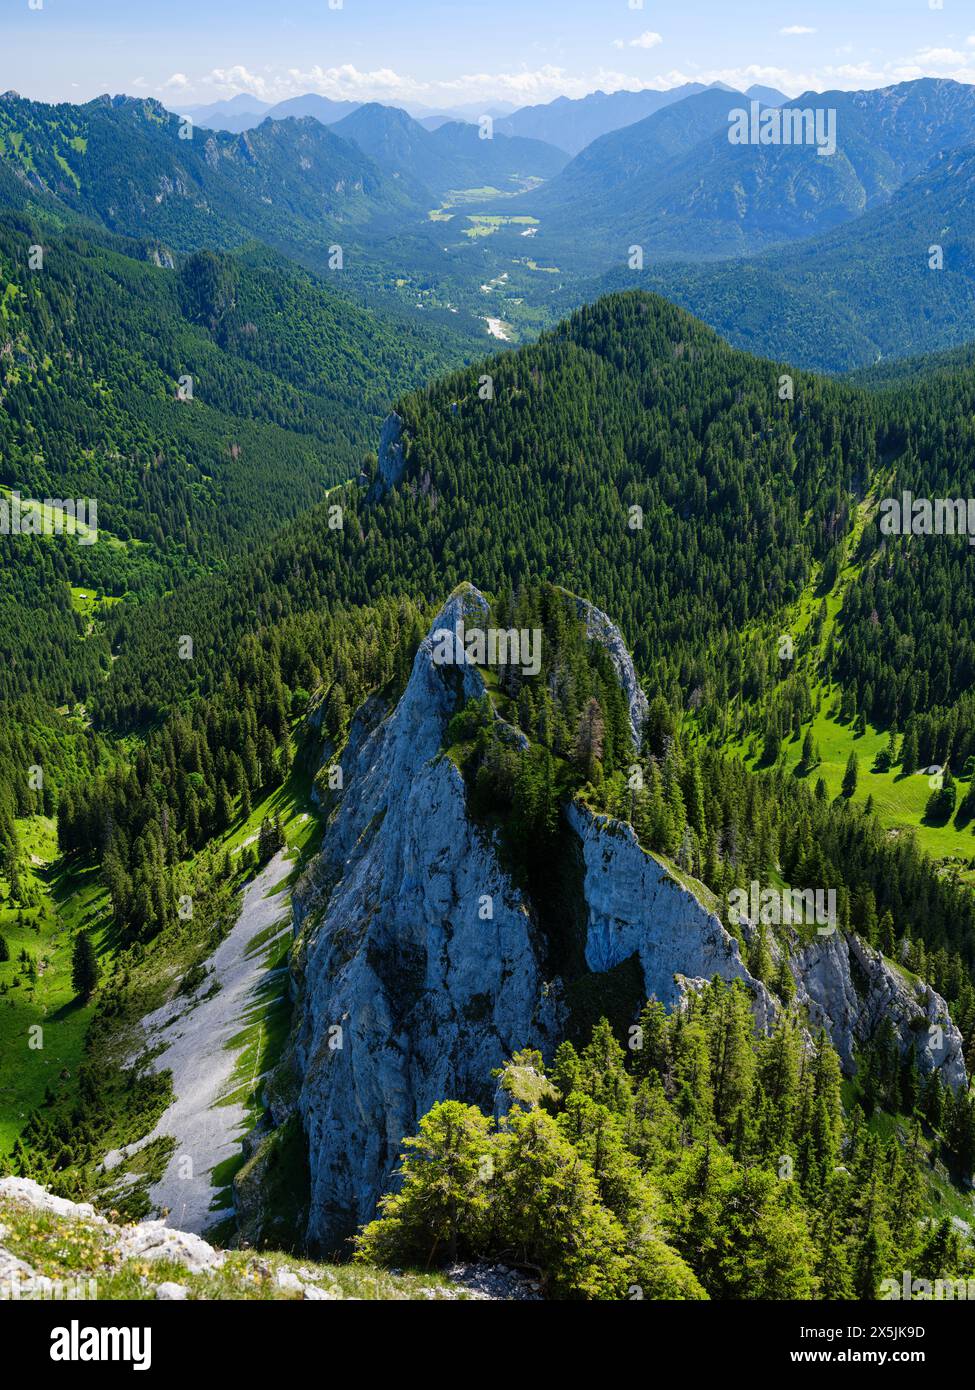 Blick auf Oberammergau und das Tal der Ammer. Naturpark Ammergauer Alpen in den nördlichen Kalkalpen Oberbayerns. Stockfoto